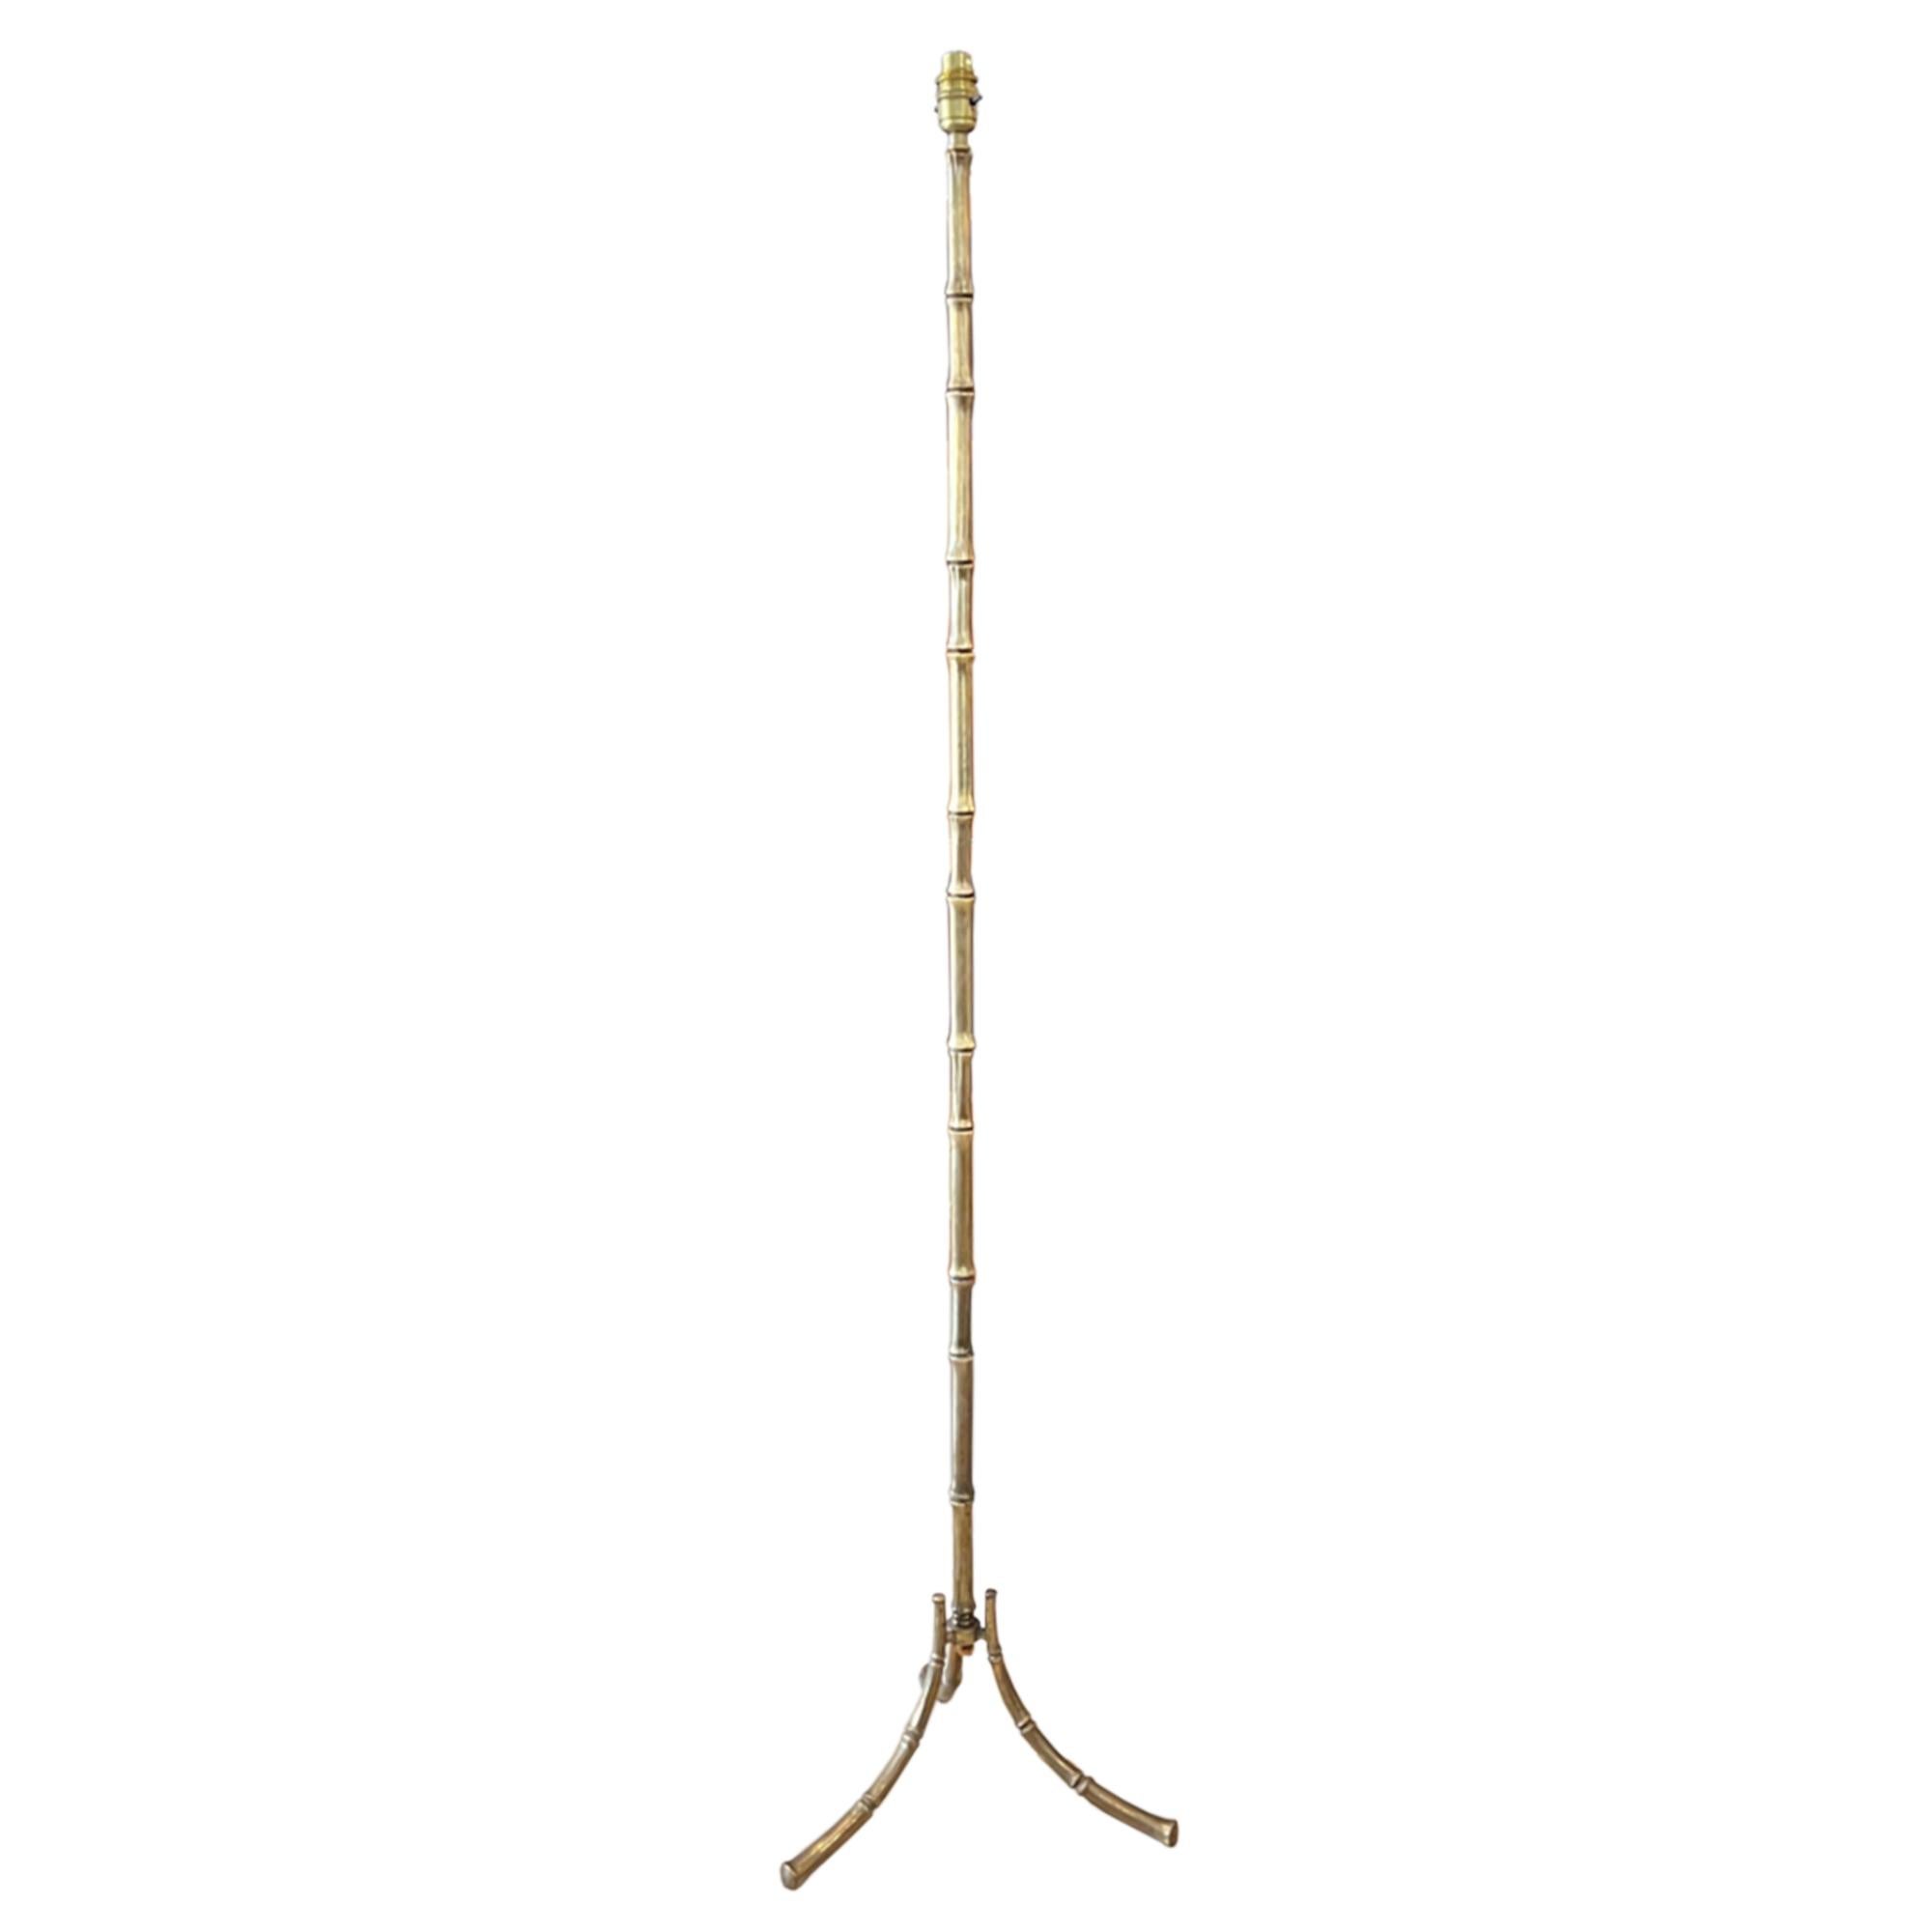 Beau et élégant, ce lampadaire est en laiton et réalisé dans le style Baguès. Joli détail en faux bambou - un design classique des années 1960.

La base est triforme et a une largeur de 31 cm. La hauteur de 142 cm correspond à la partie supérieure